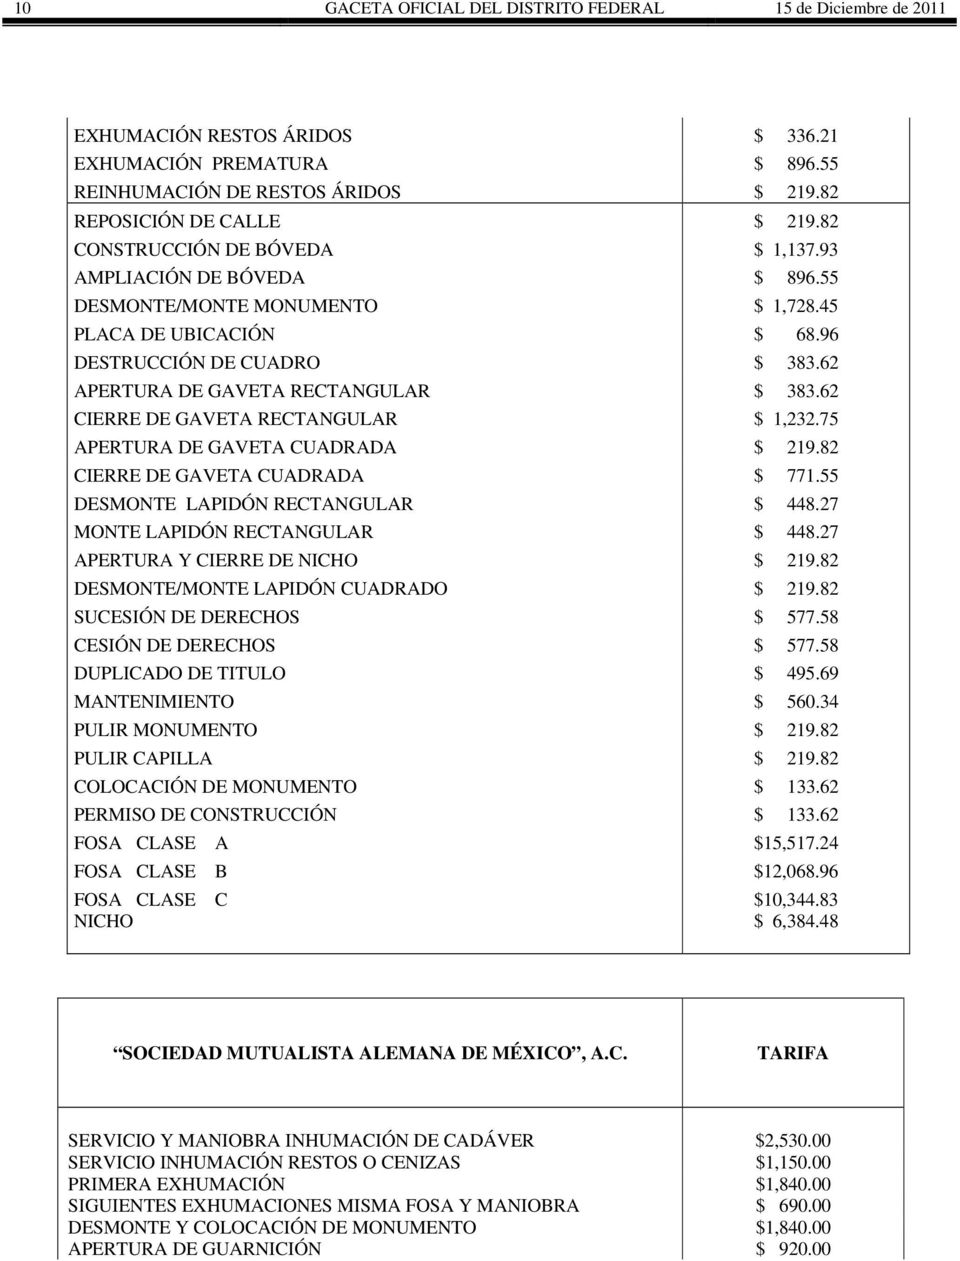 62 CIERRE DE GAVETA RECTANGULAR $ 1,232.75 APERTURA DE GAVETA CUADRADA $ 219.82 CIERRE DE GAVETA CUADRADA $ 771.55 DESMONTE LAPIDÓN RECTANGULAR $ 448.27 MONTE LAPIDÓN RECTANGULAR $ 448.